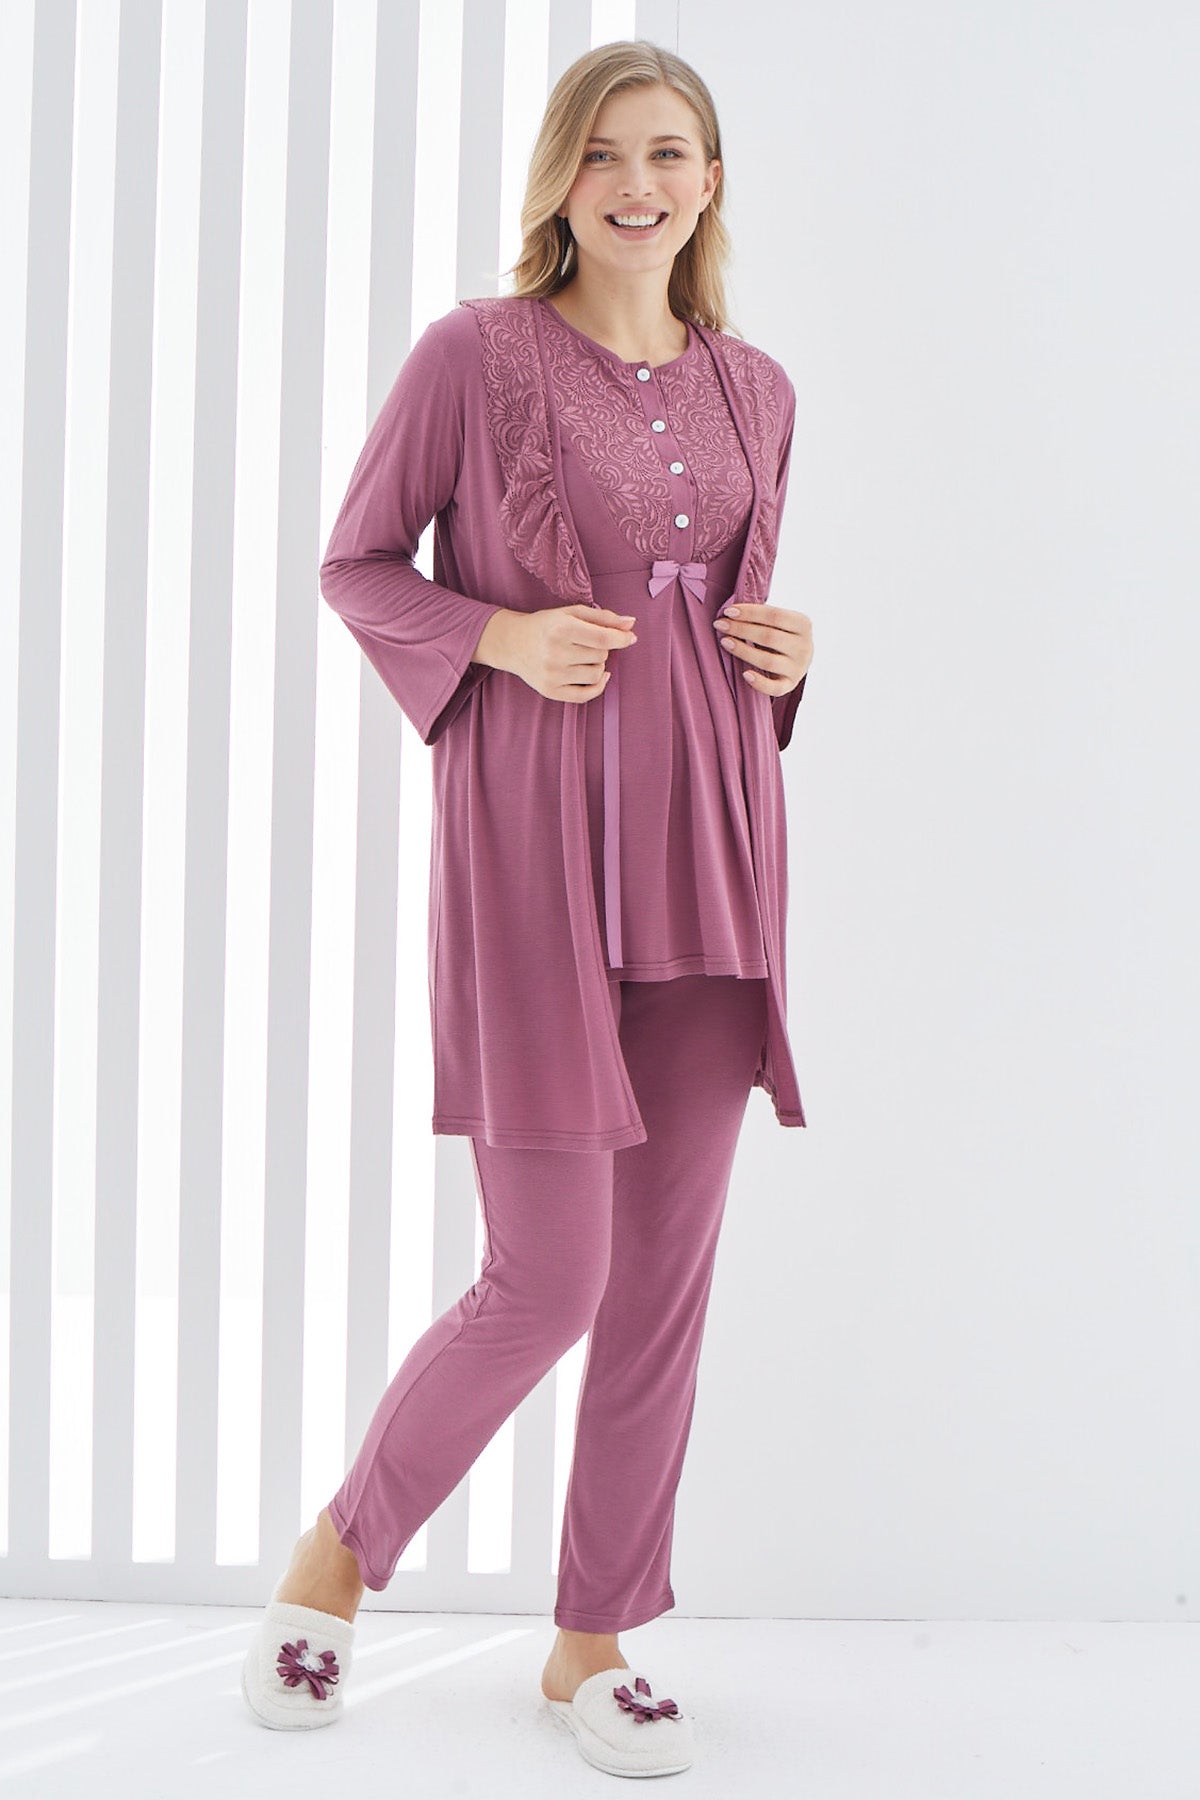 Guipure 3-Pieces Maternity & Nursing Pajamas With Lace Collar Robe Plum - 3403